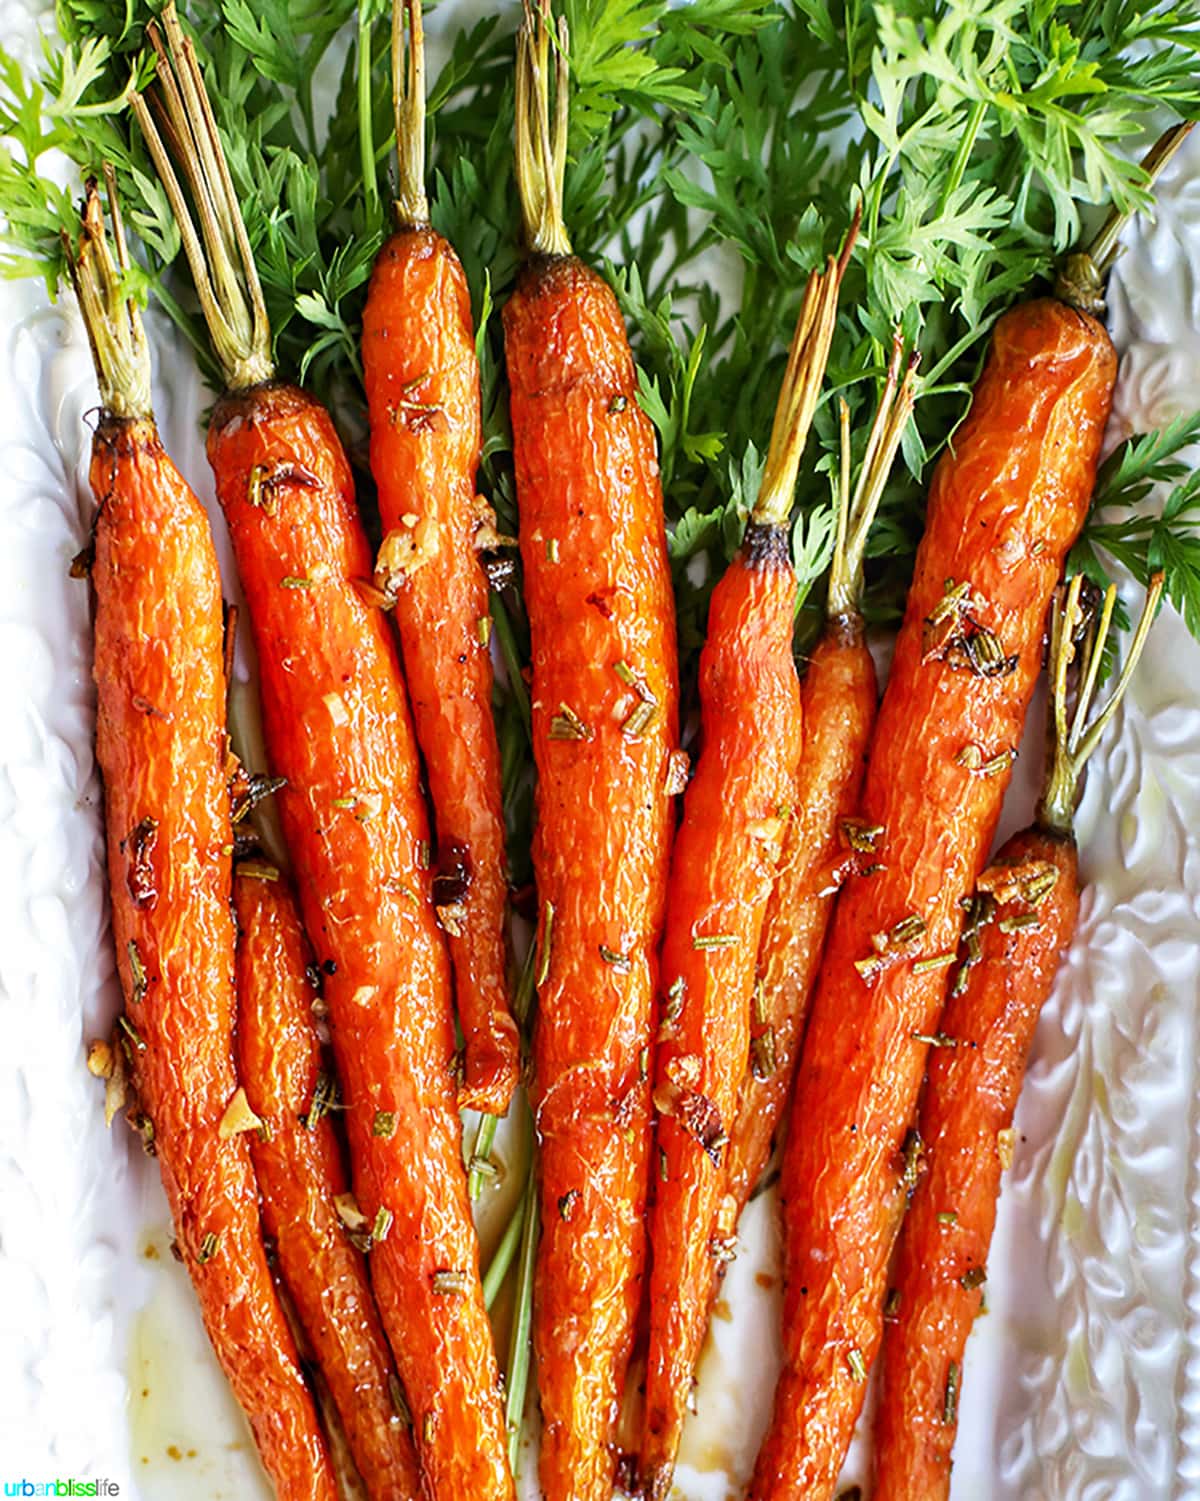 Garlic rosemary carrots roasted on platter